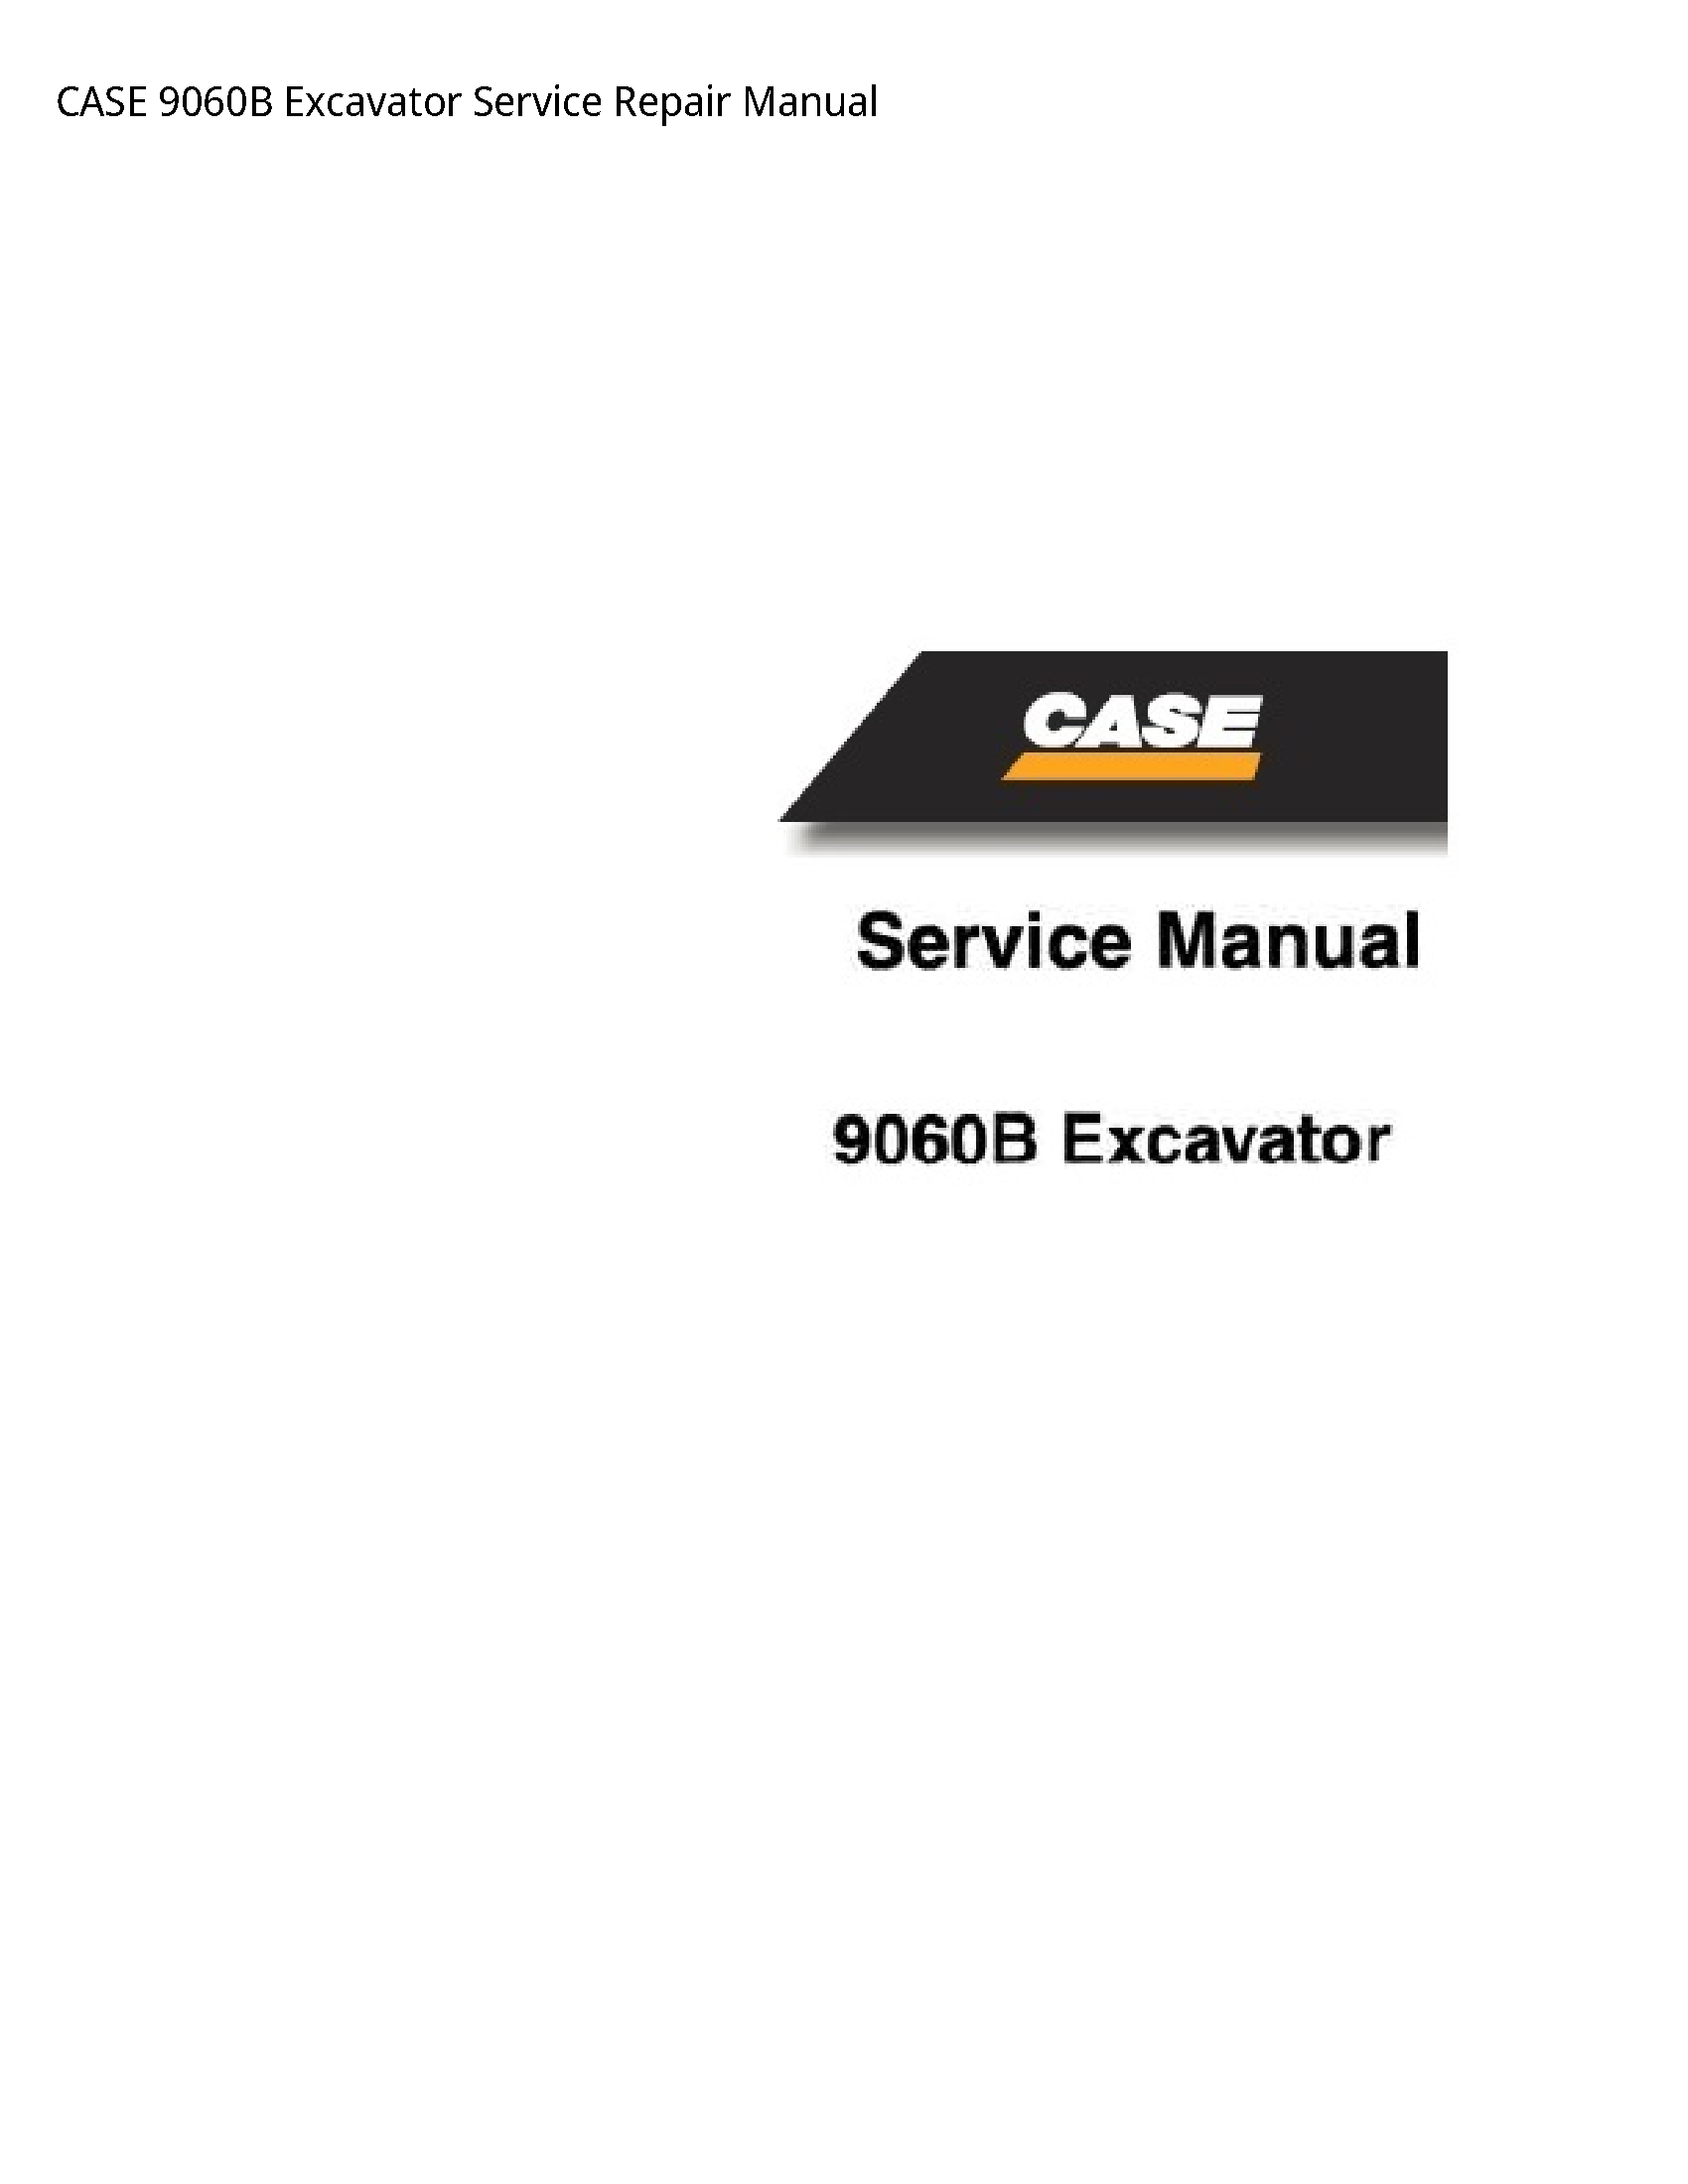 Case/Case IH 9060B Excavator manual